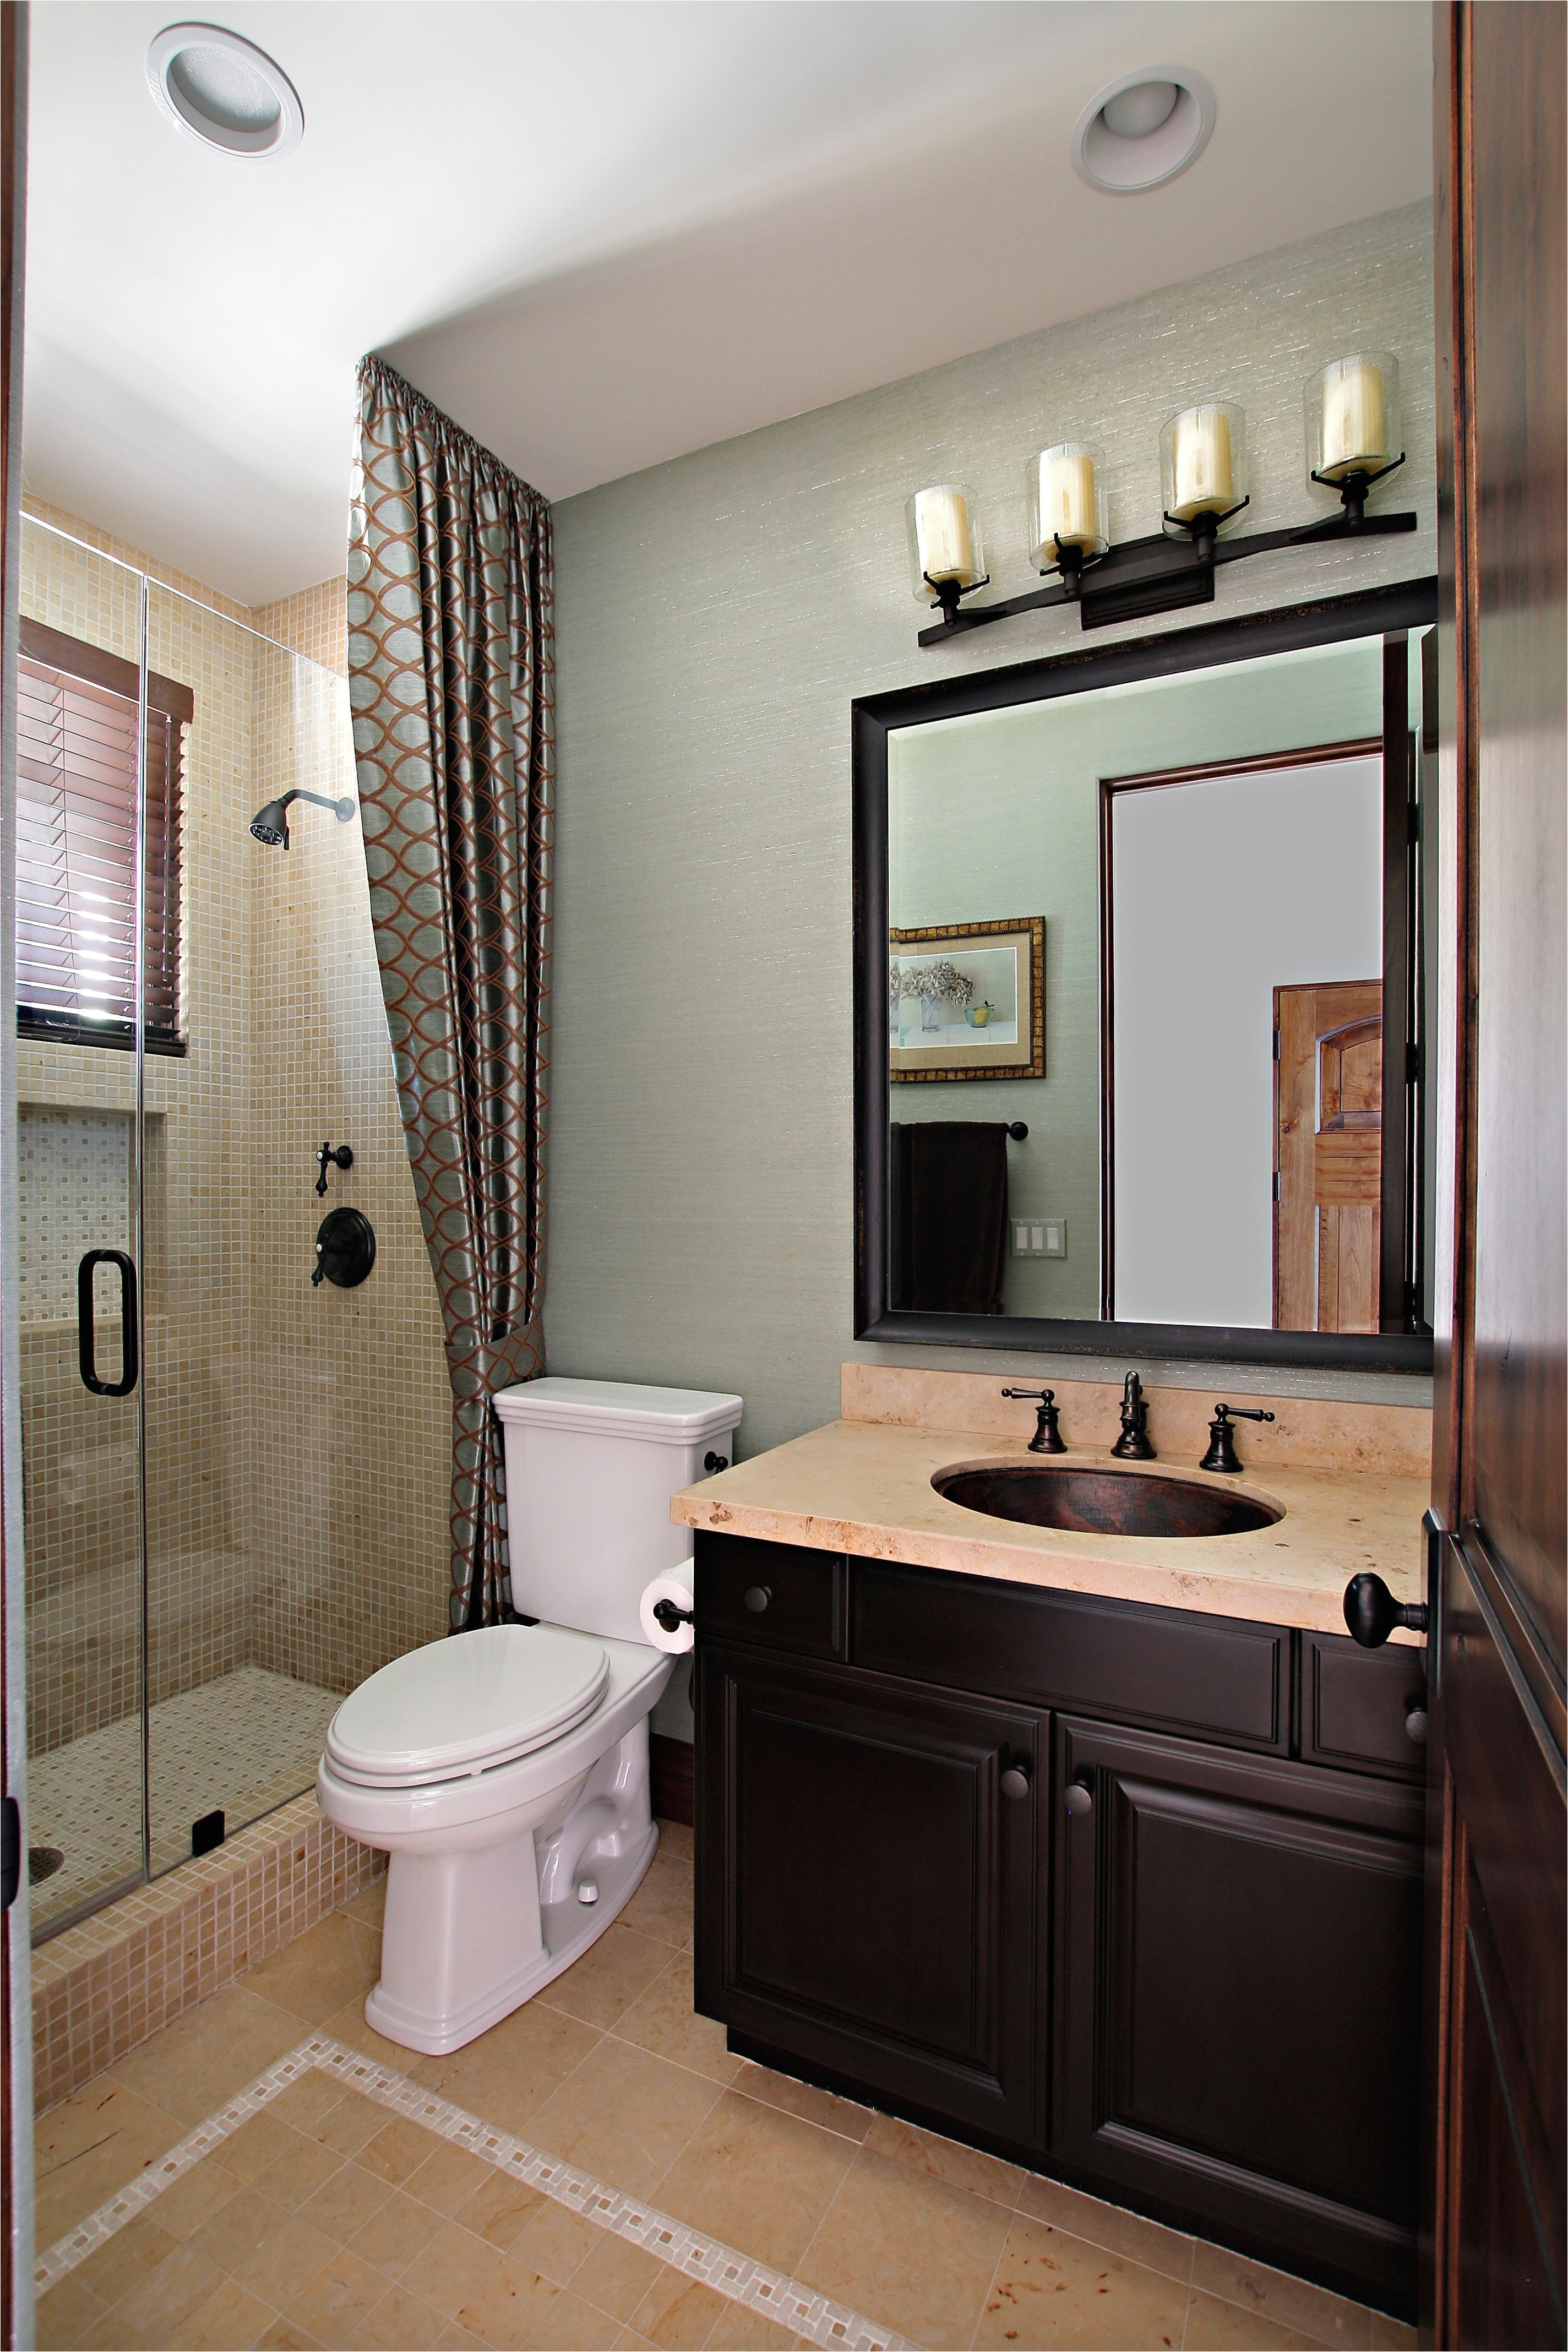 Green Exterior Design With Extra Tub Shower Ideas For Small Bathrooms I Pinimg Originals 8e 04 